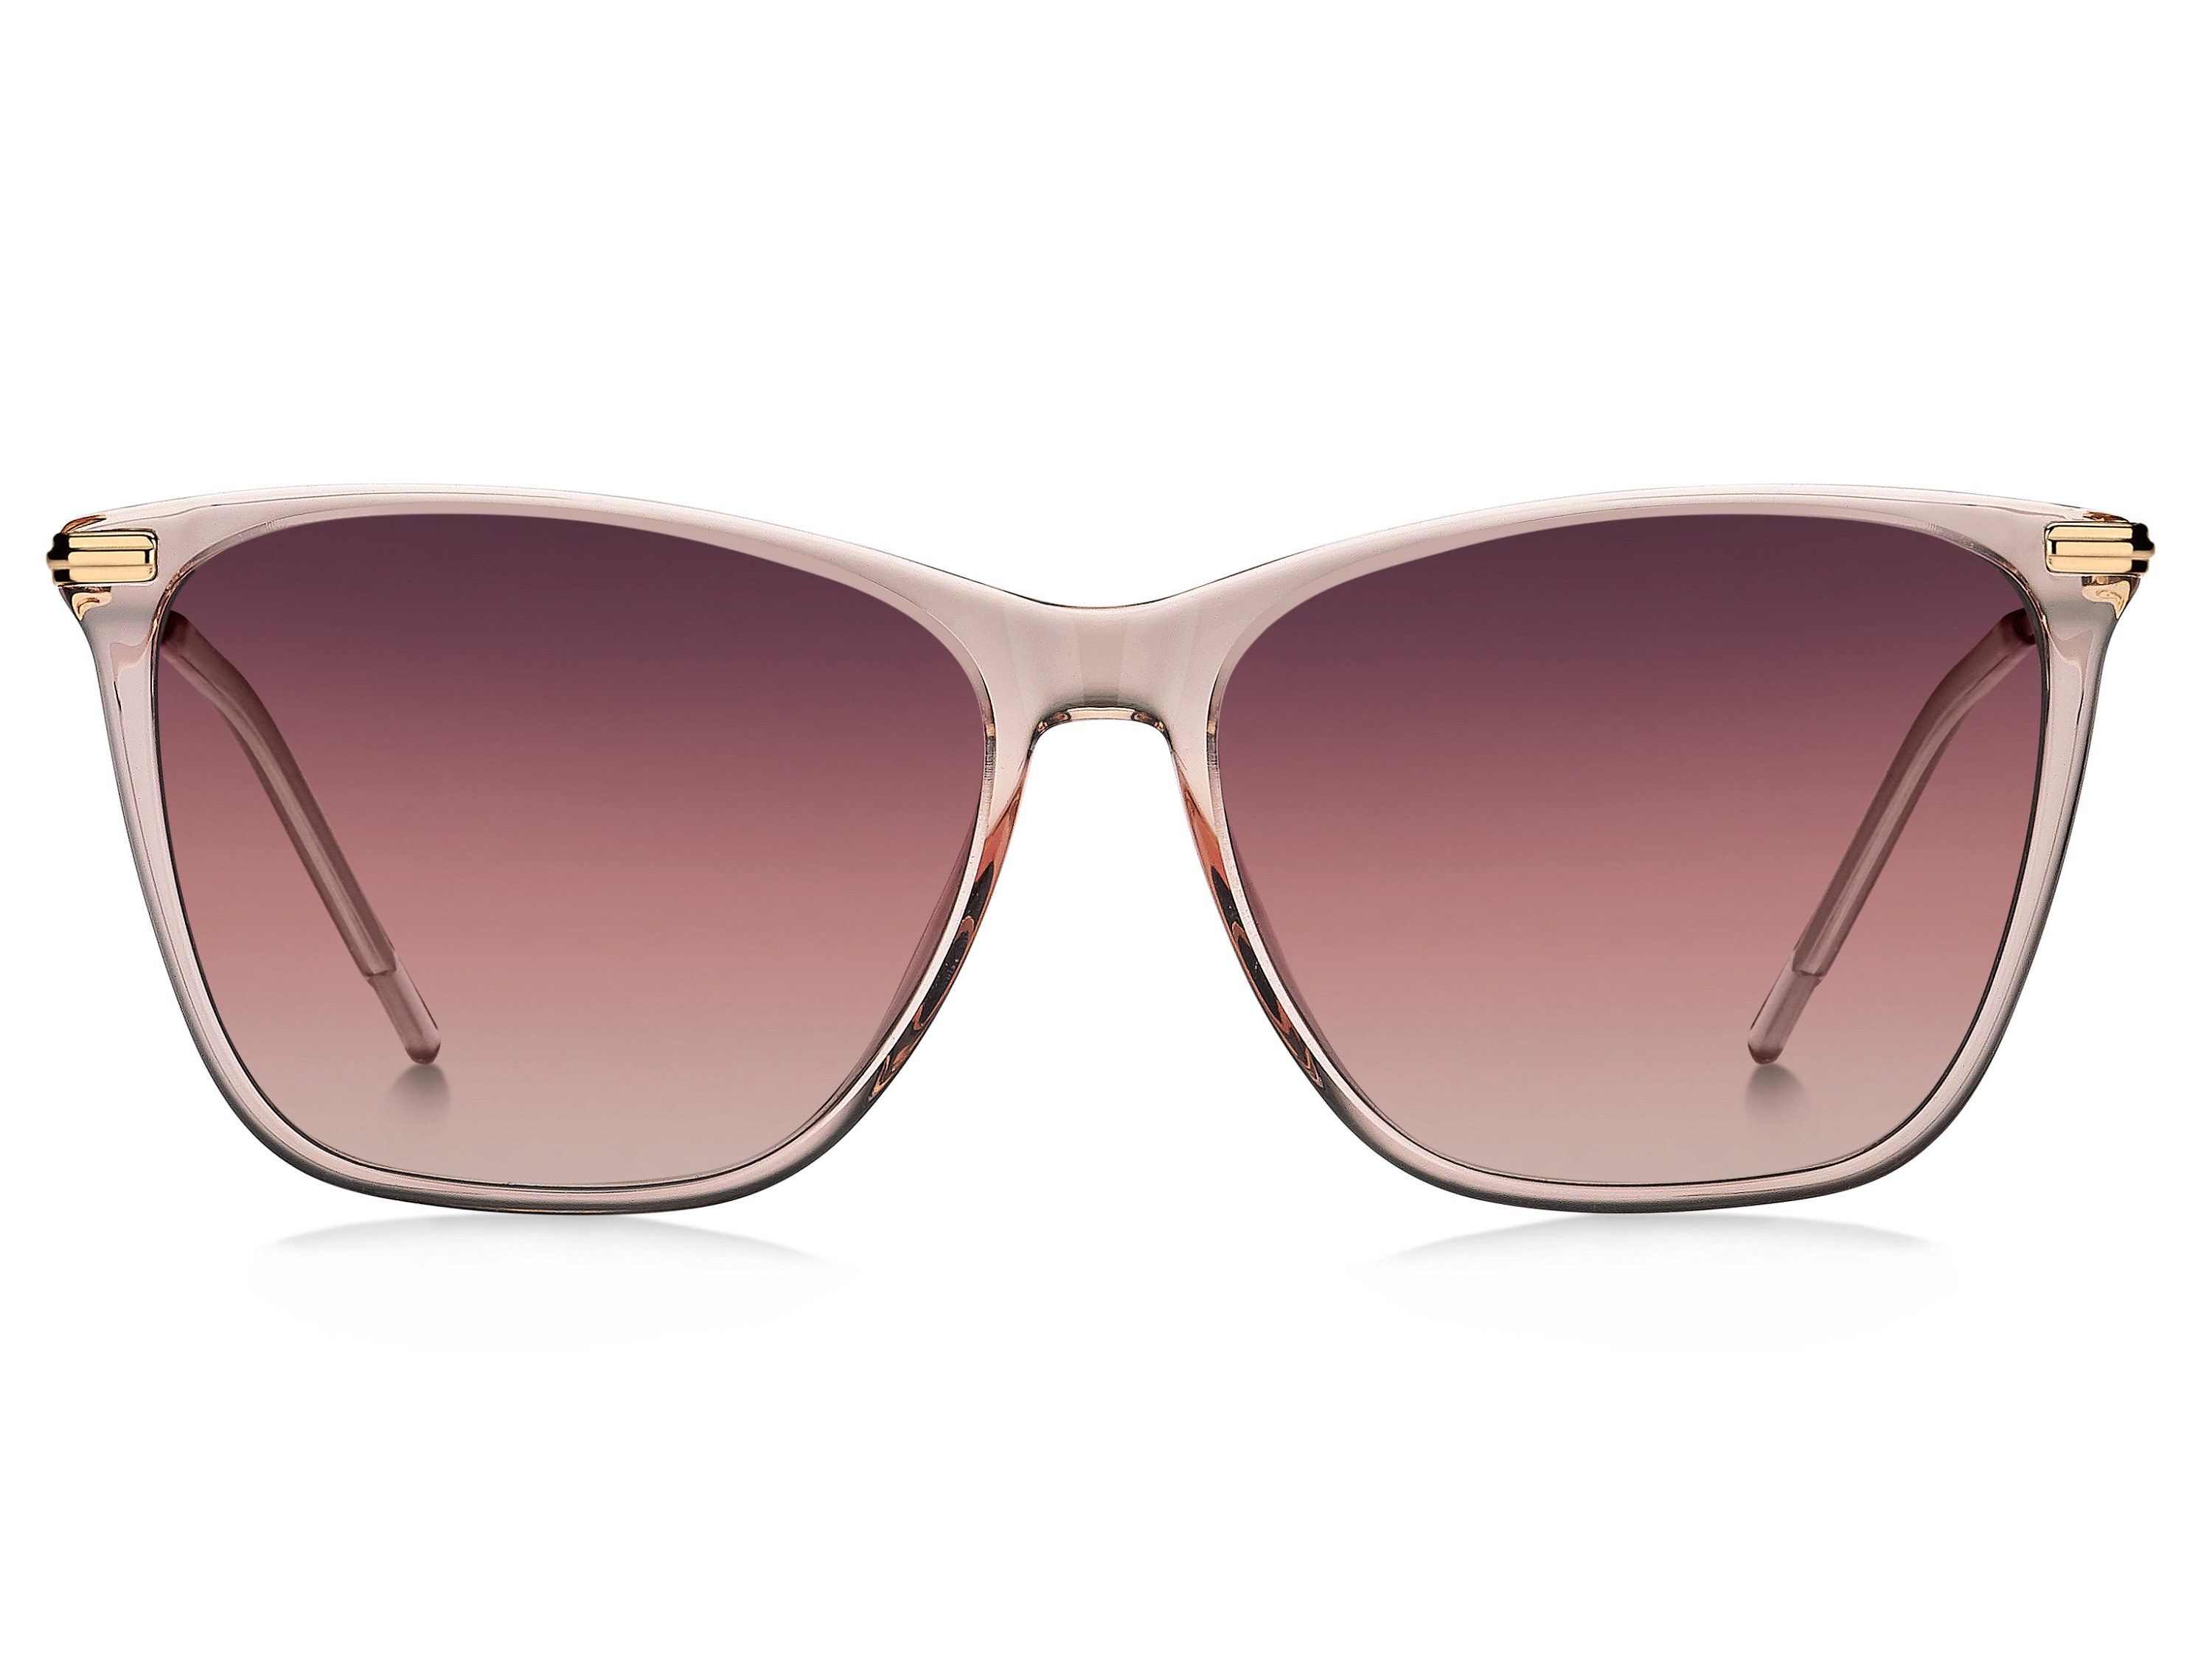 Das Bild zeigt die Sonnenbrille BOSS1661S S45 von der Marke BOSS in Pink/Gold.